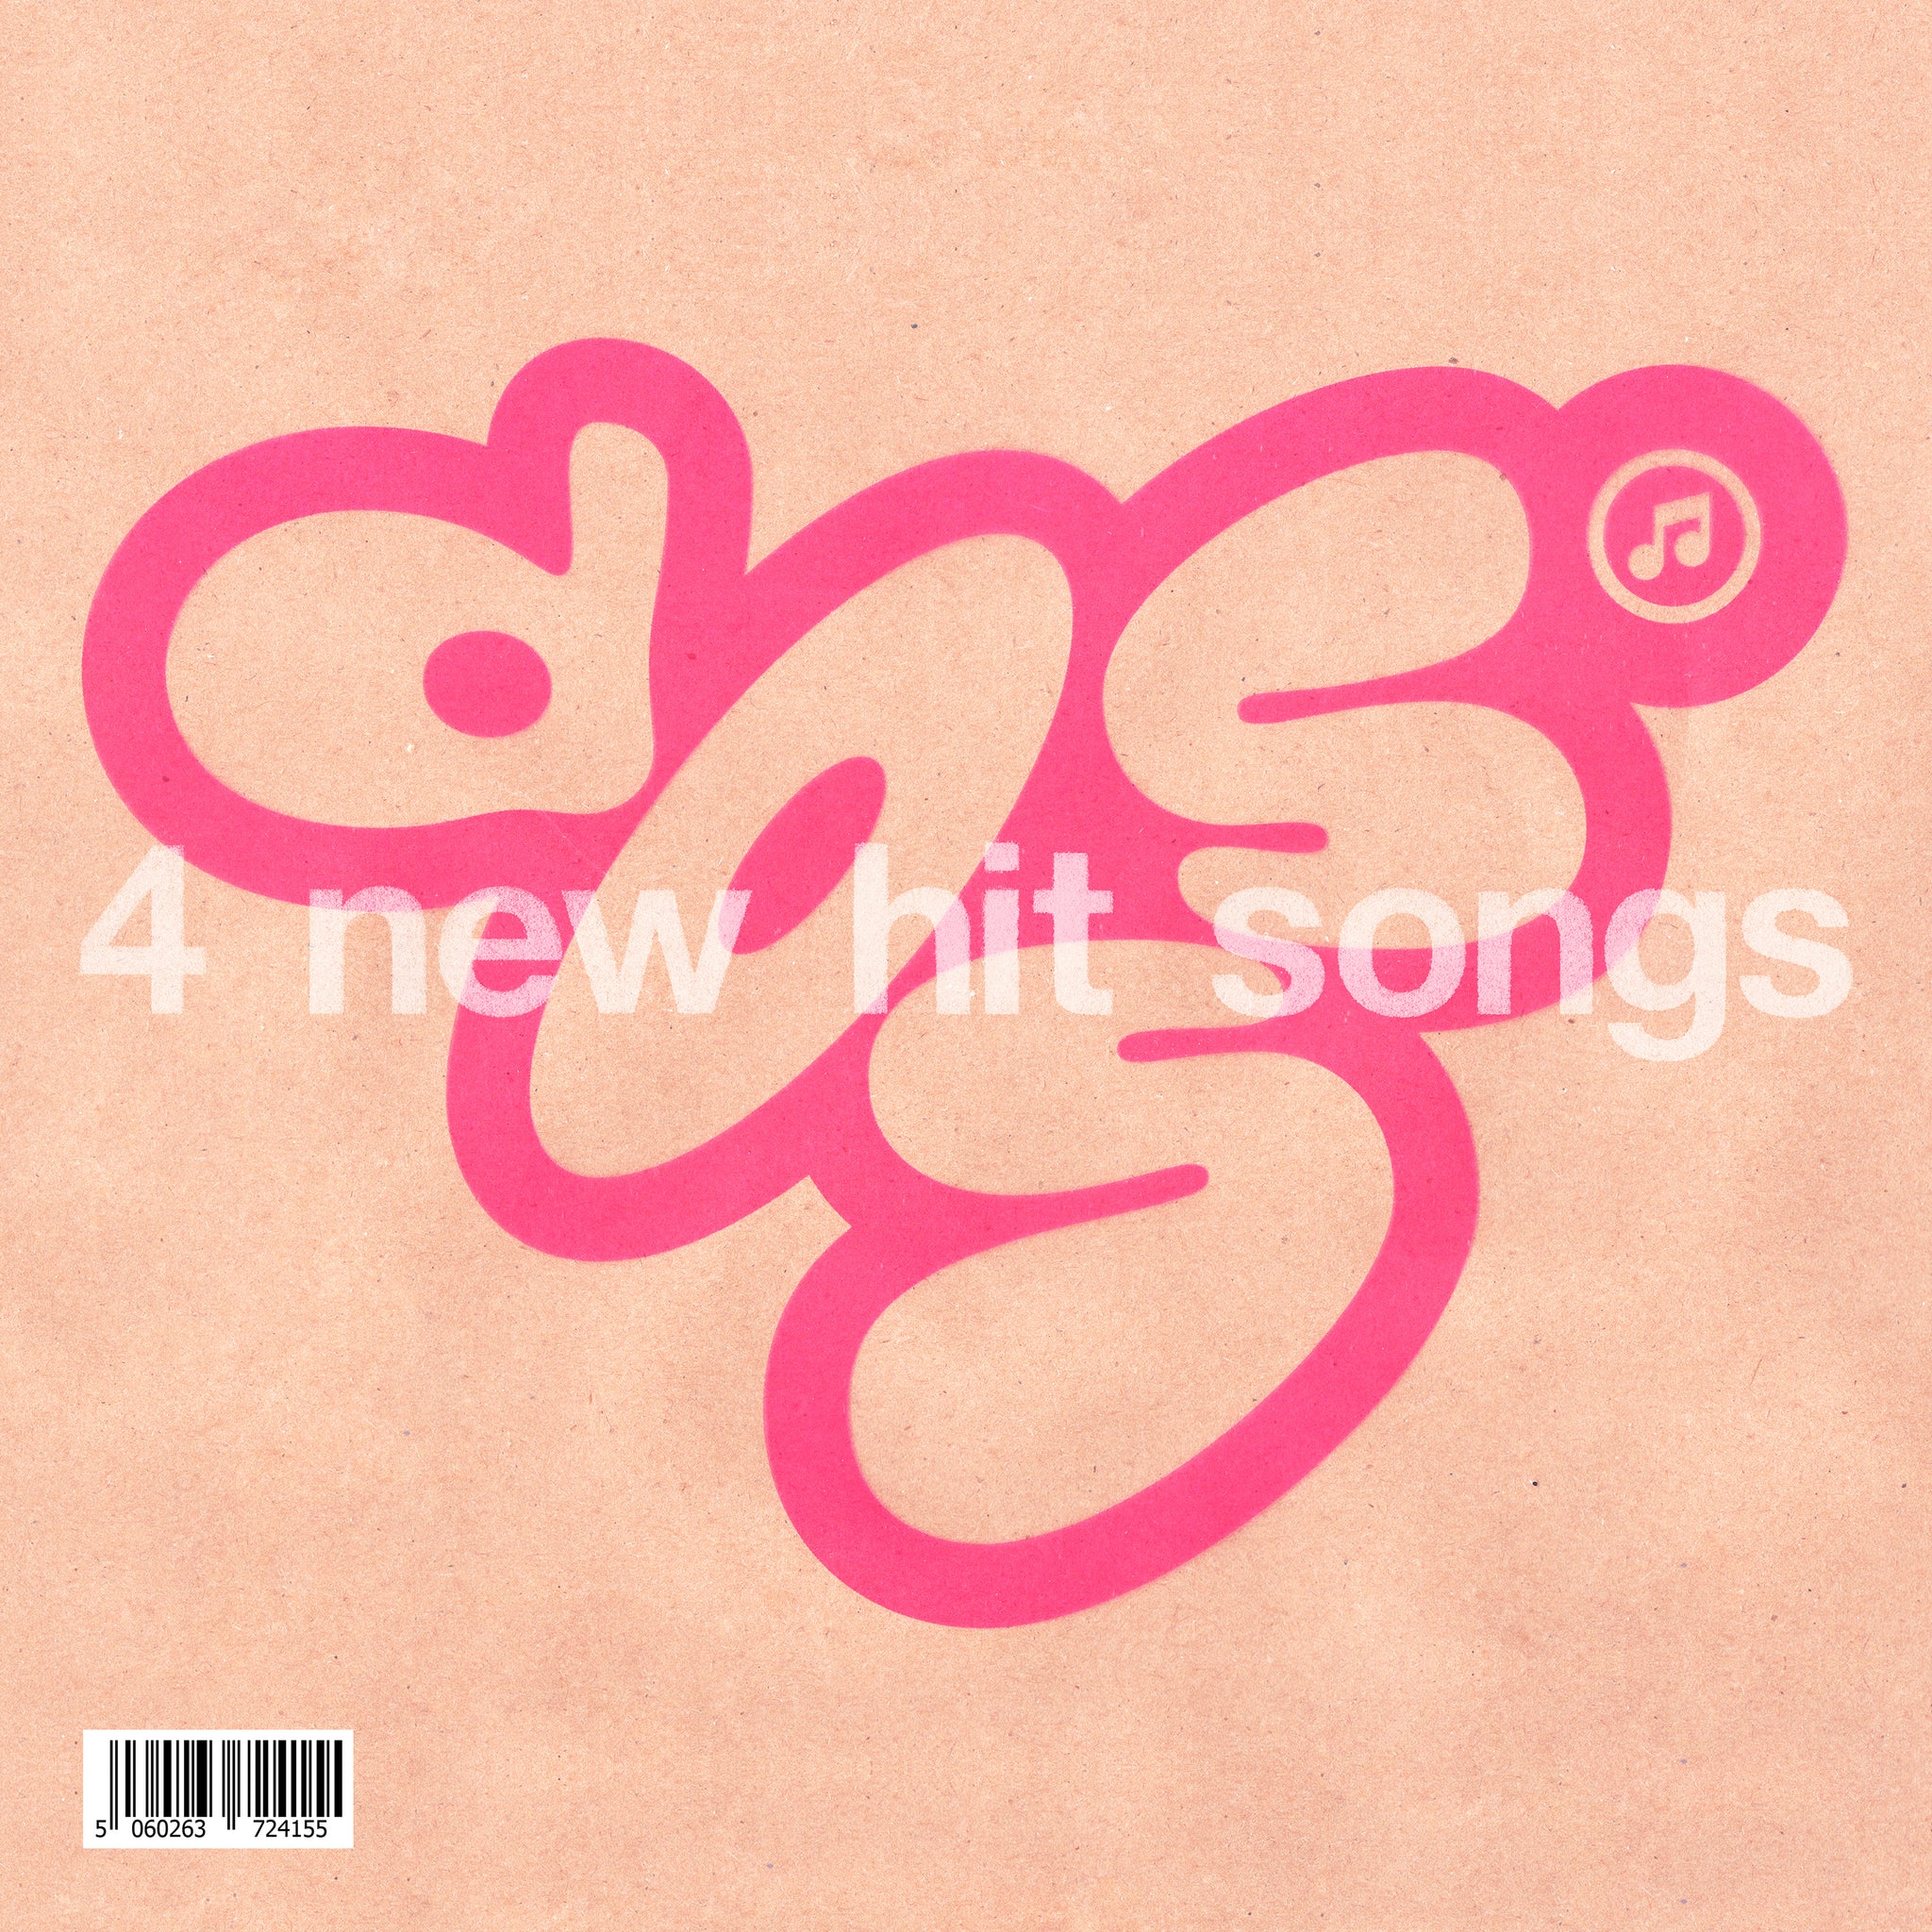 Doss - 4 New Hit Songs (WHITE VINYL)